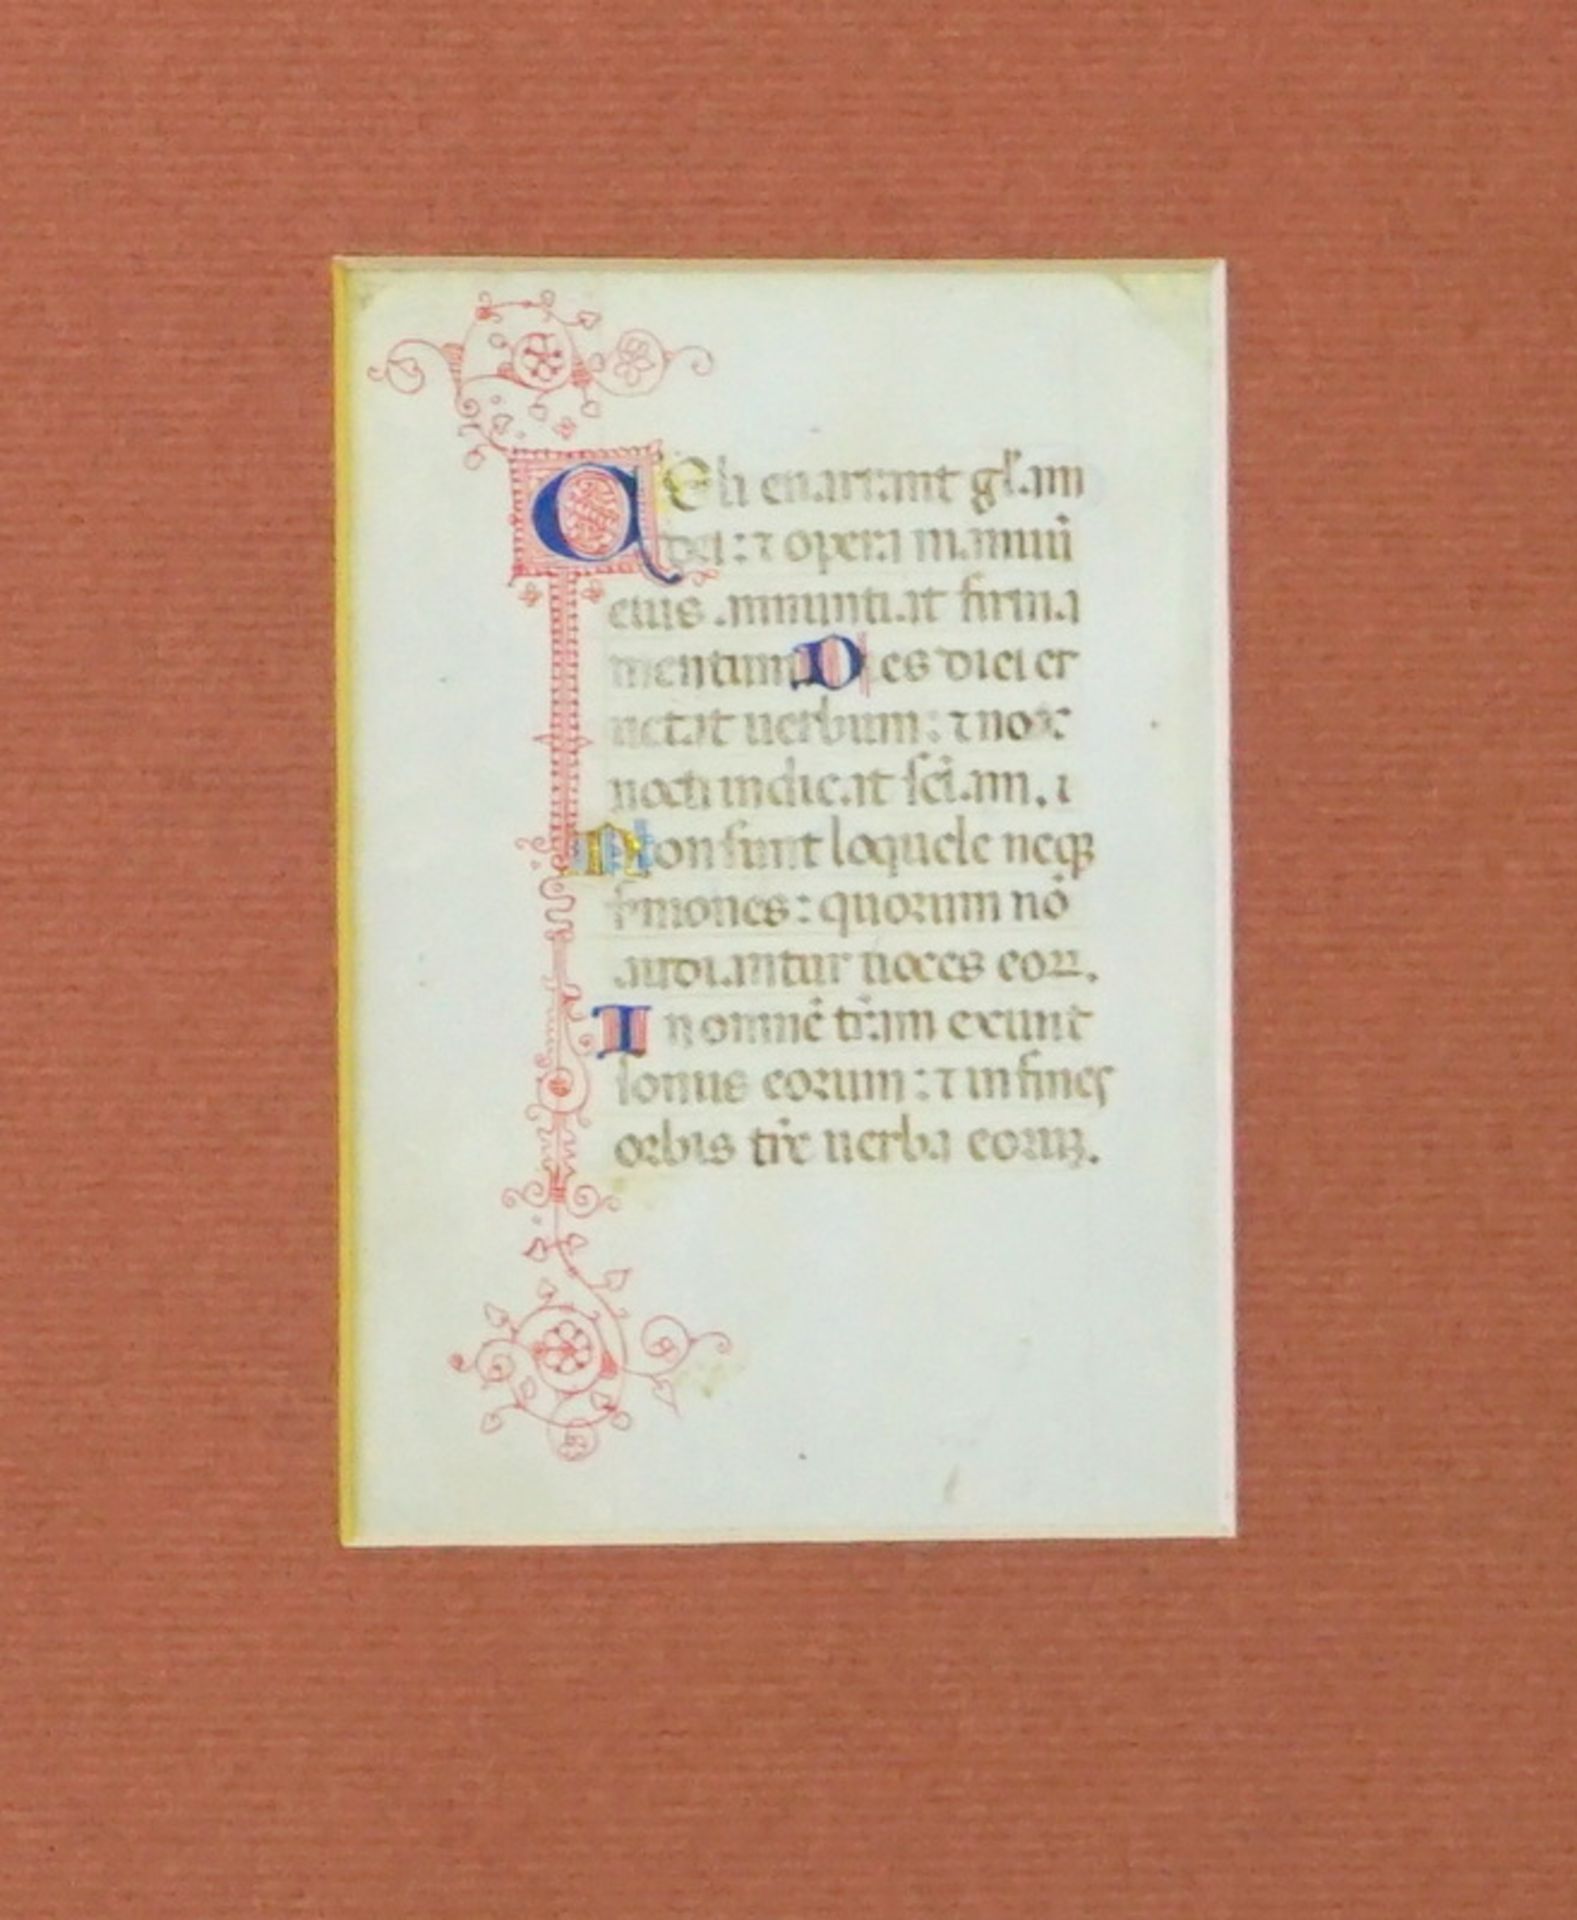 2 Feine Stundenbuchblätter auf Pergament 15 jh. - Image 3 of 3